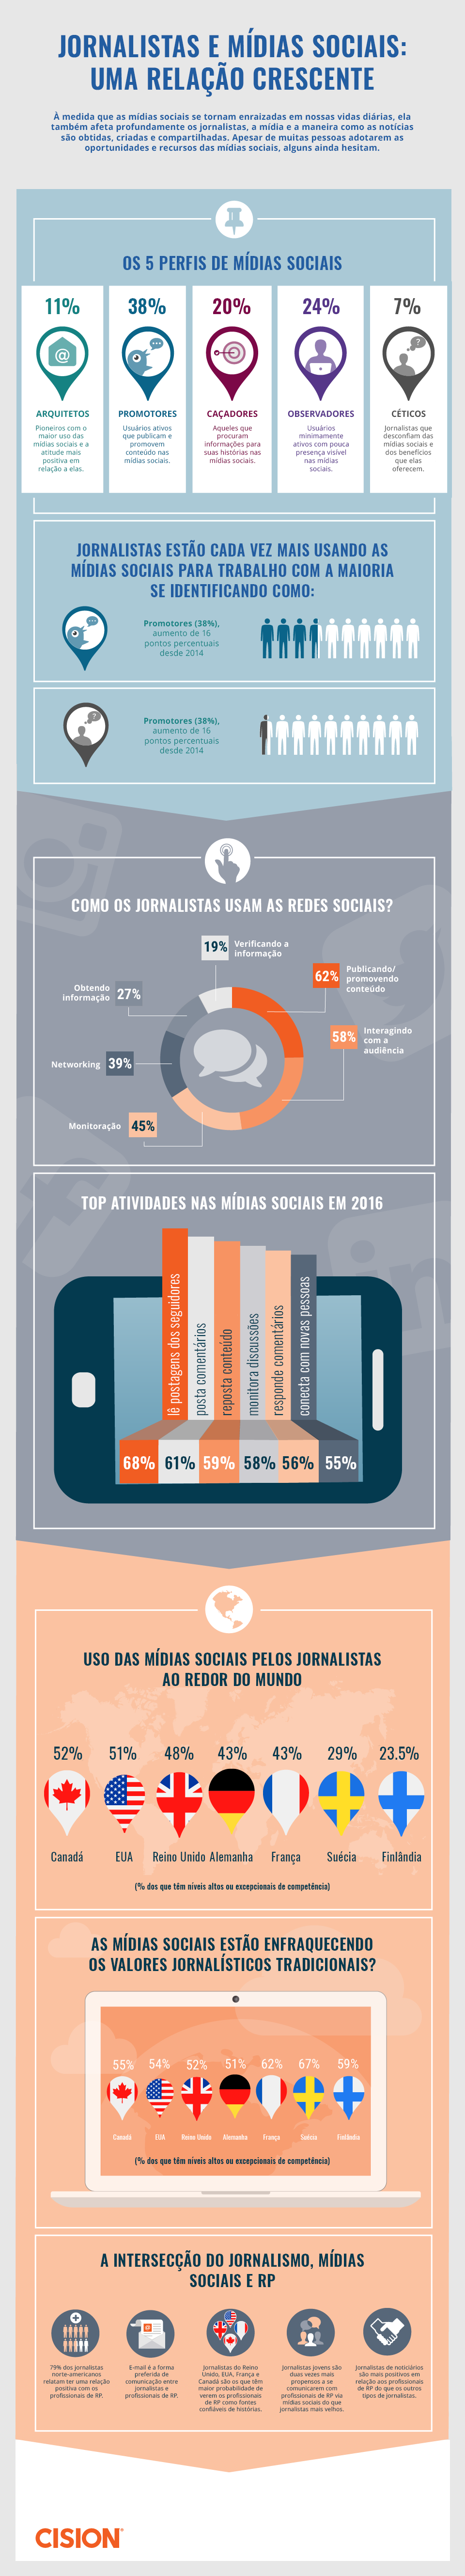 Infográfico: como os jornalistas usam as mídias sociais atualmente